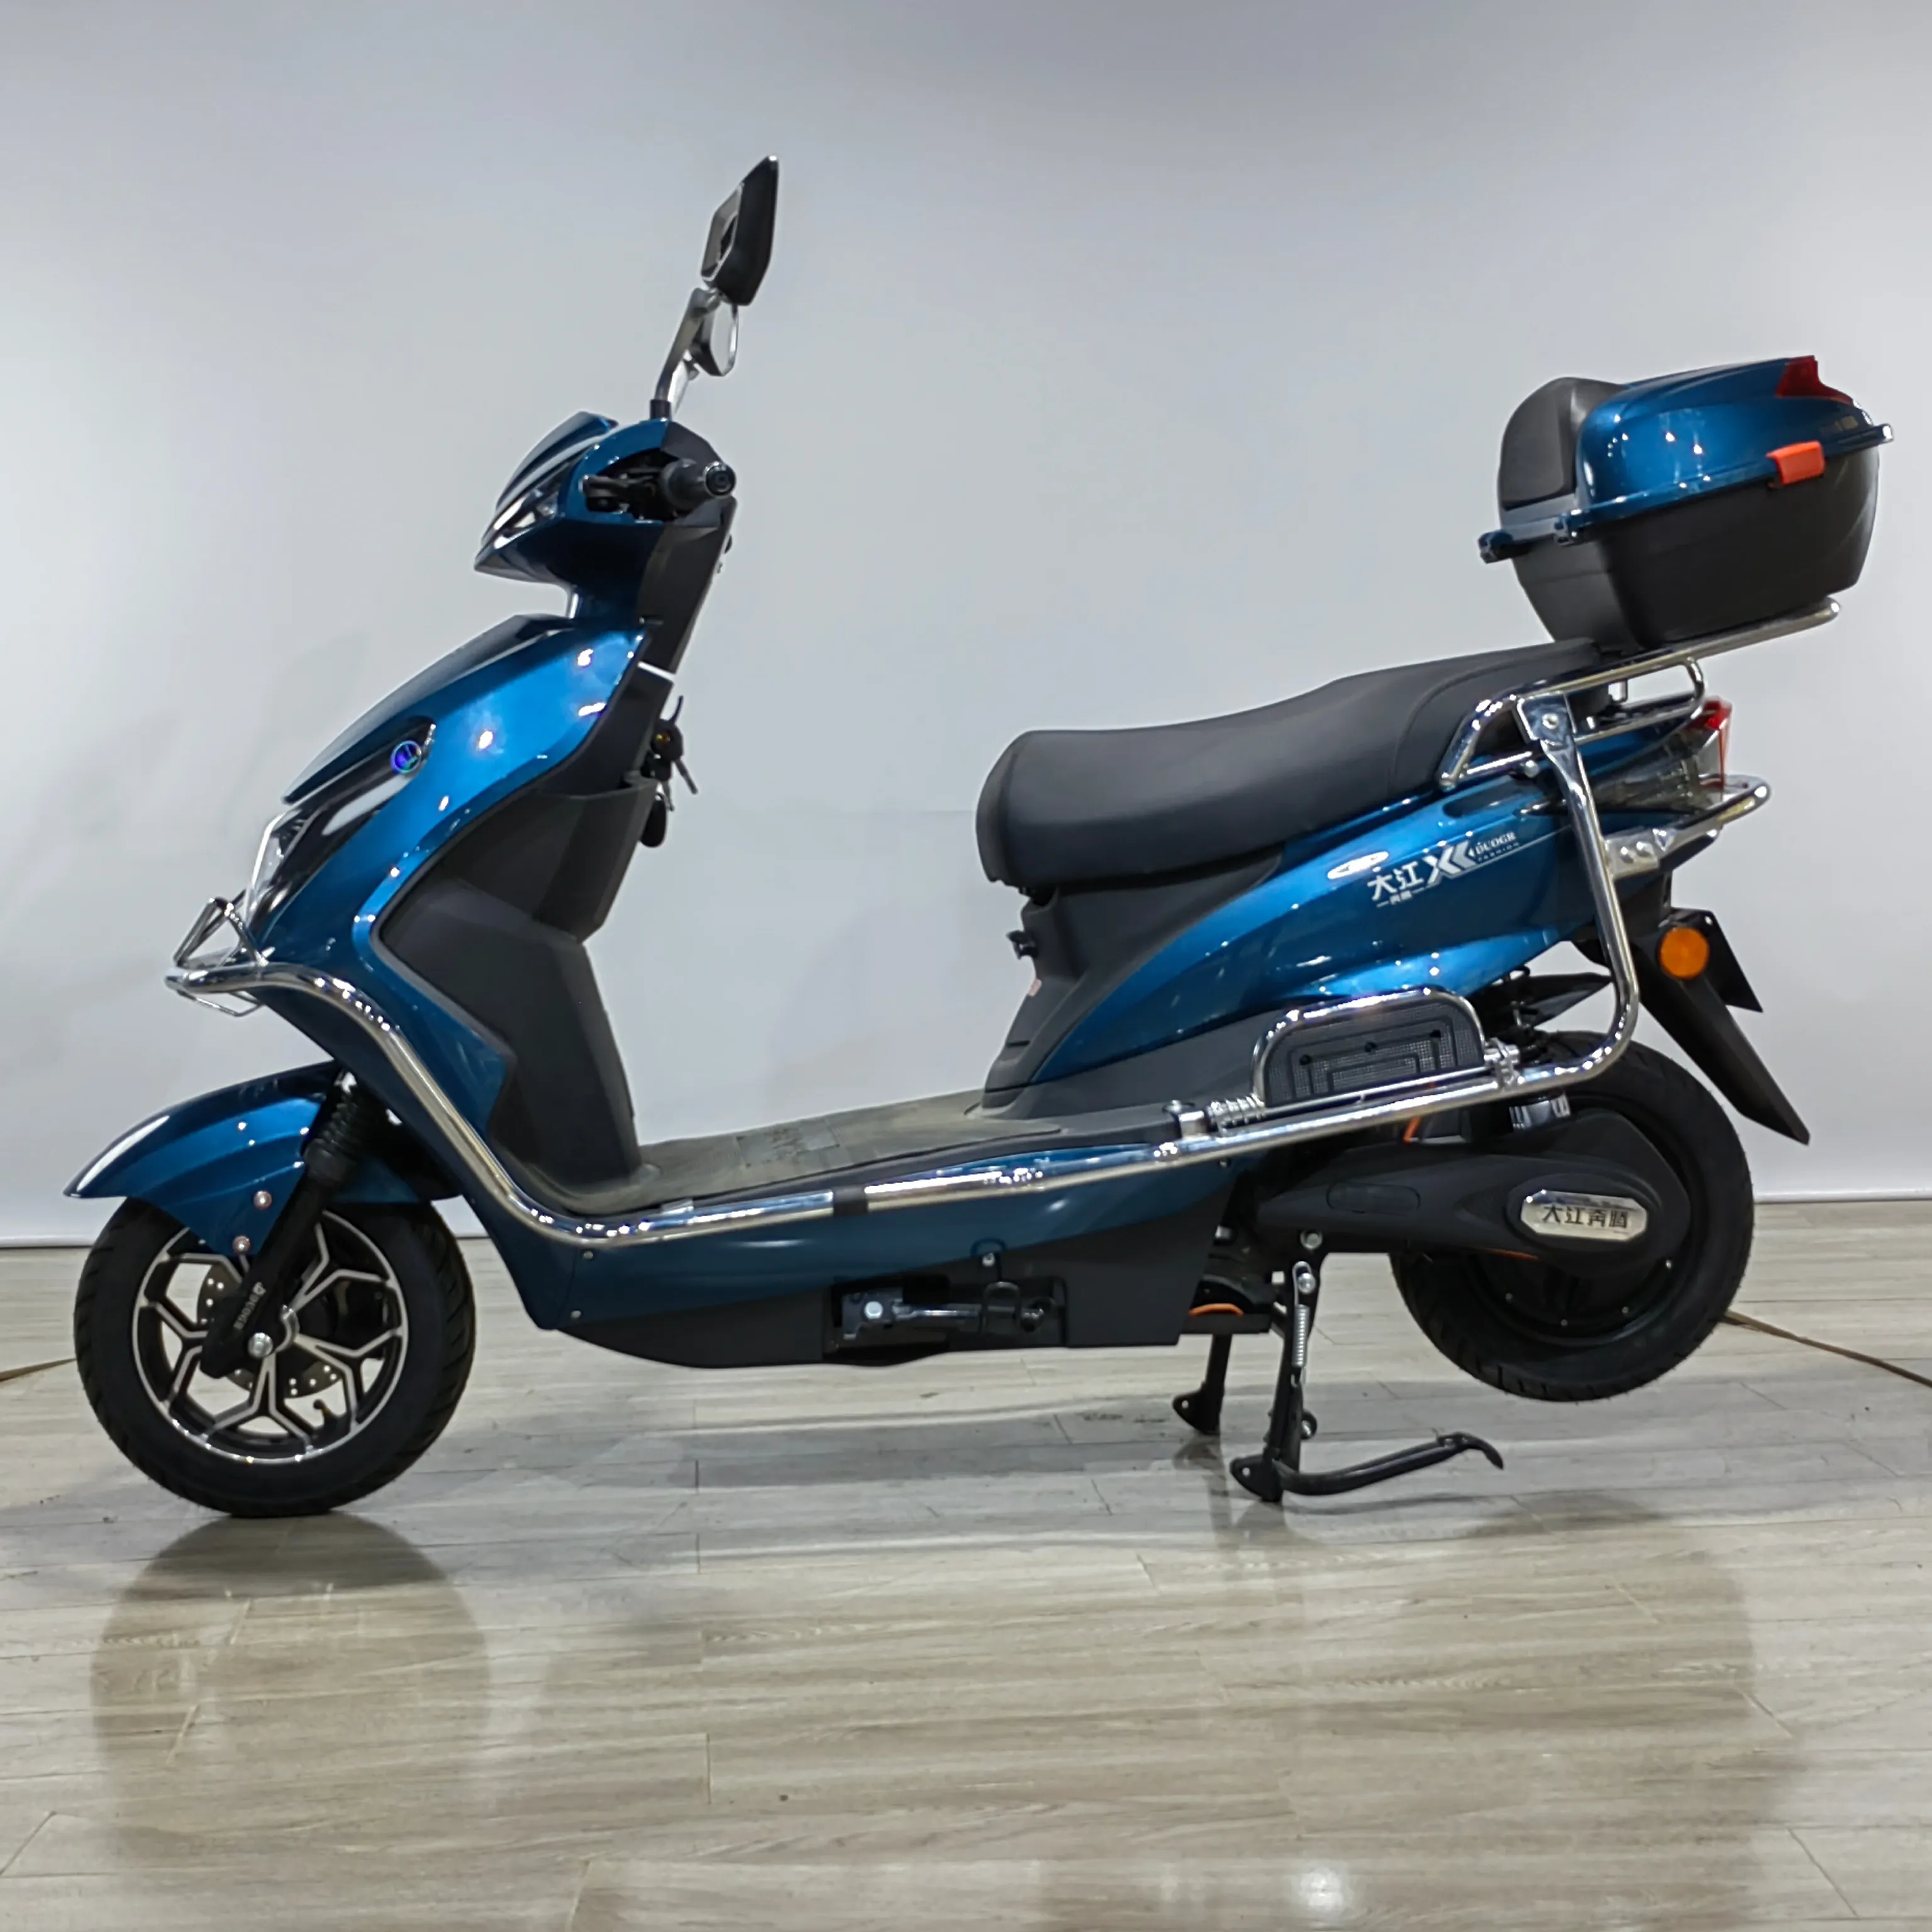 Vendita calda due ruote ciclomotore elettrico ad alta velocità 1500w 72v moto Scooter elettrico moto moto moto pendolarismo quotidiano